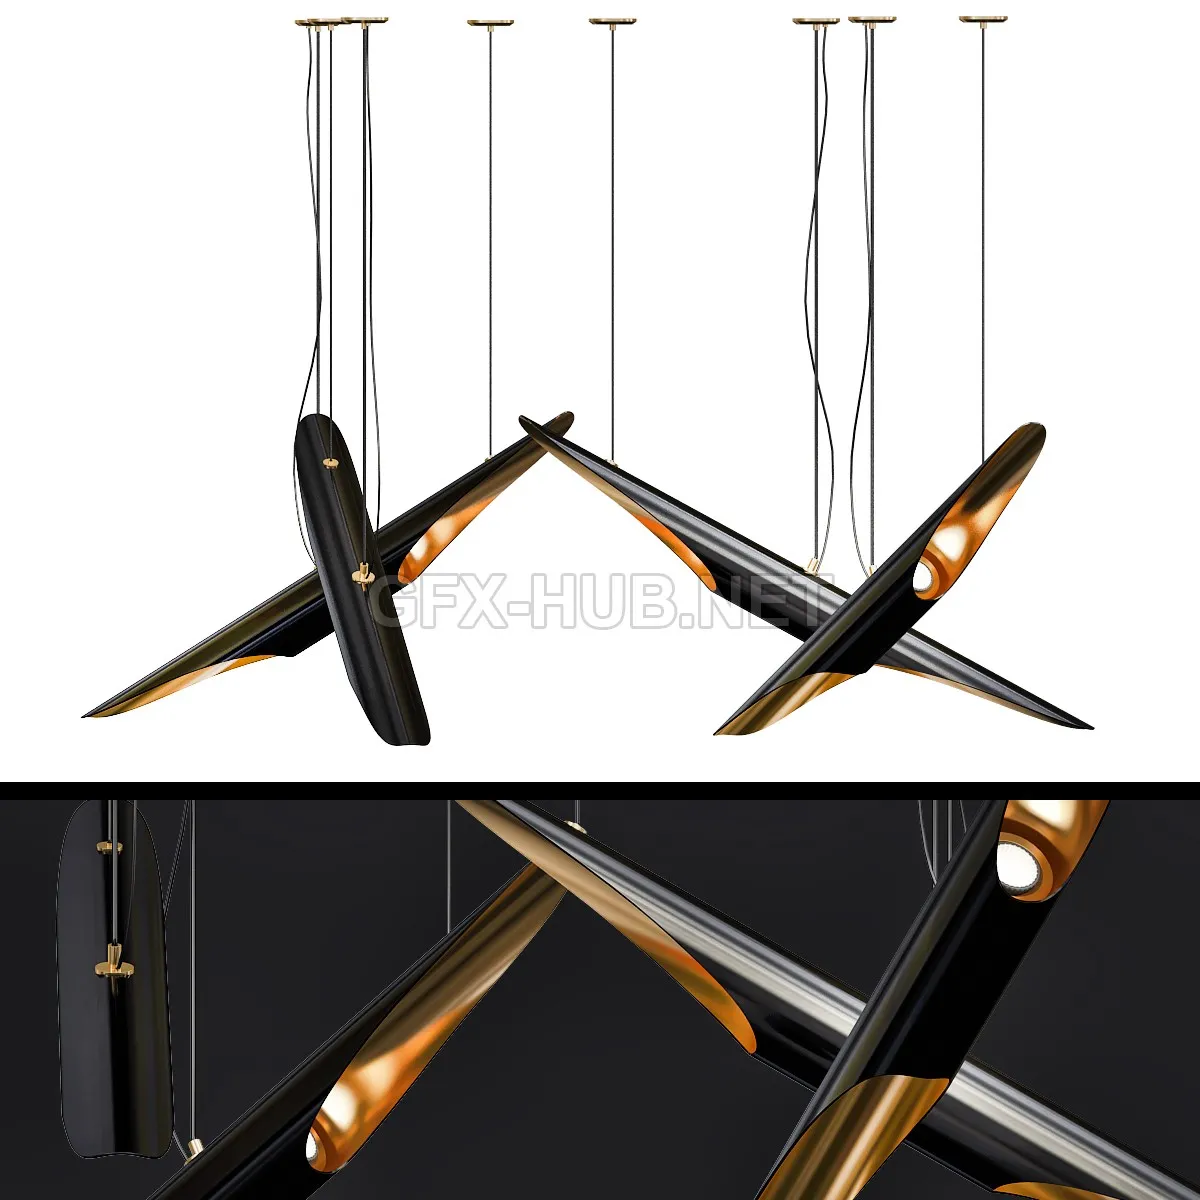 FURNITURE 3D MODELS – COLTRANE chandelier